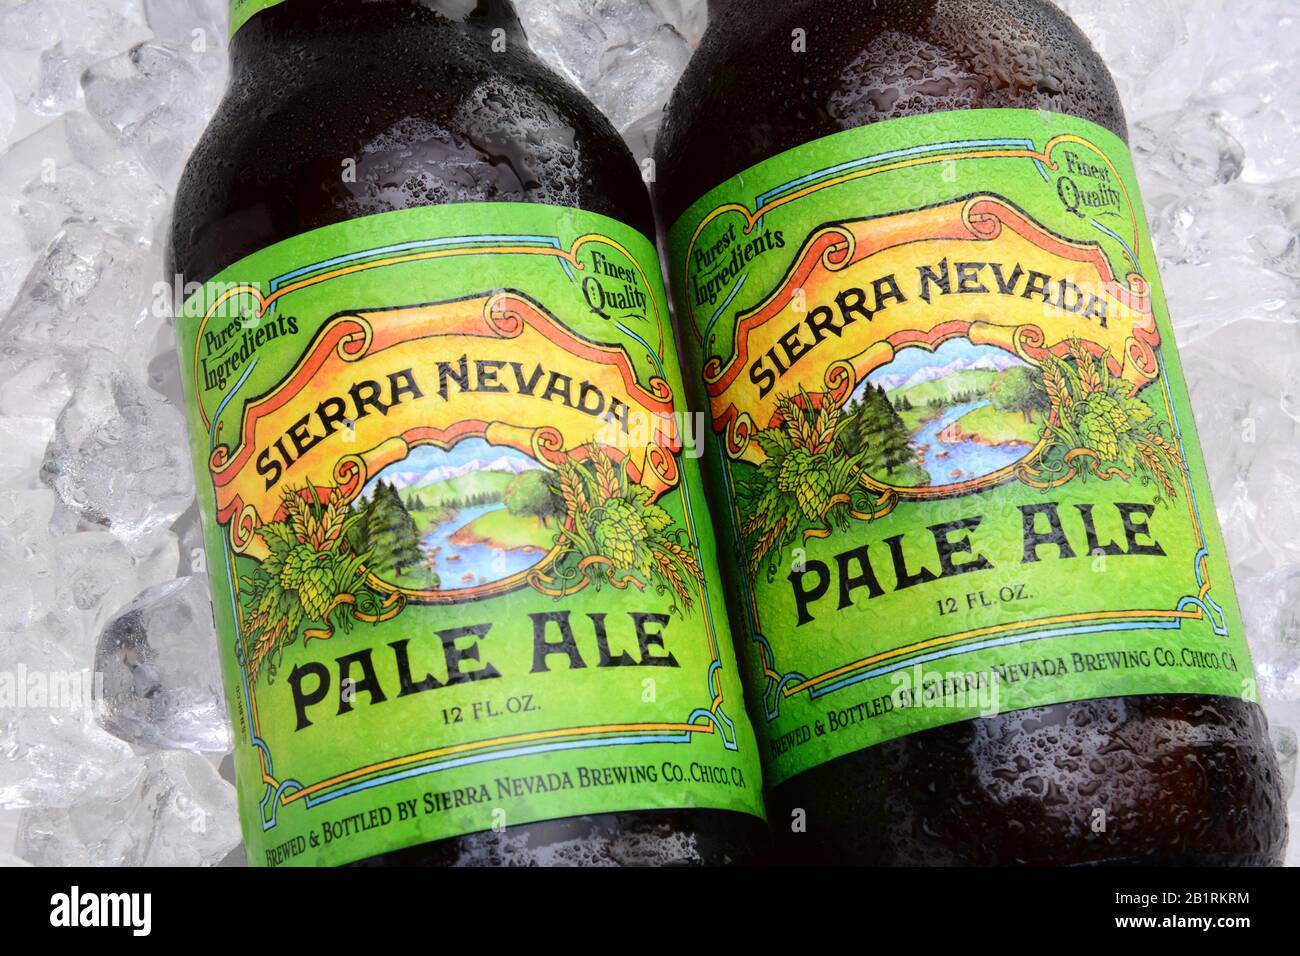 Irvine, CA - 25 MAI 2014 : deux bouteilles de Sierra Nevada Pale Ale sur glace. La Sierra Nevada Brewing Co. A été créée en 1980 par des homebrasseurs à Chico, Ca Banque D'Images